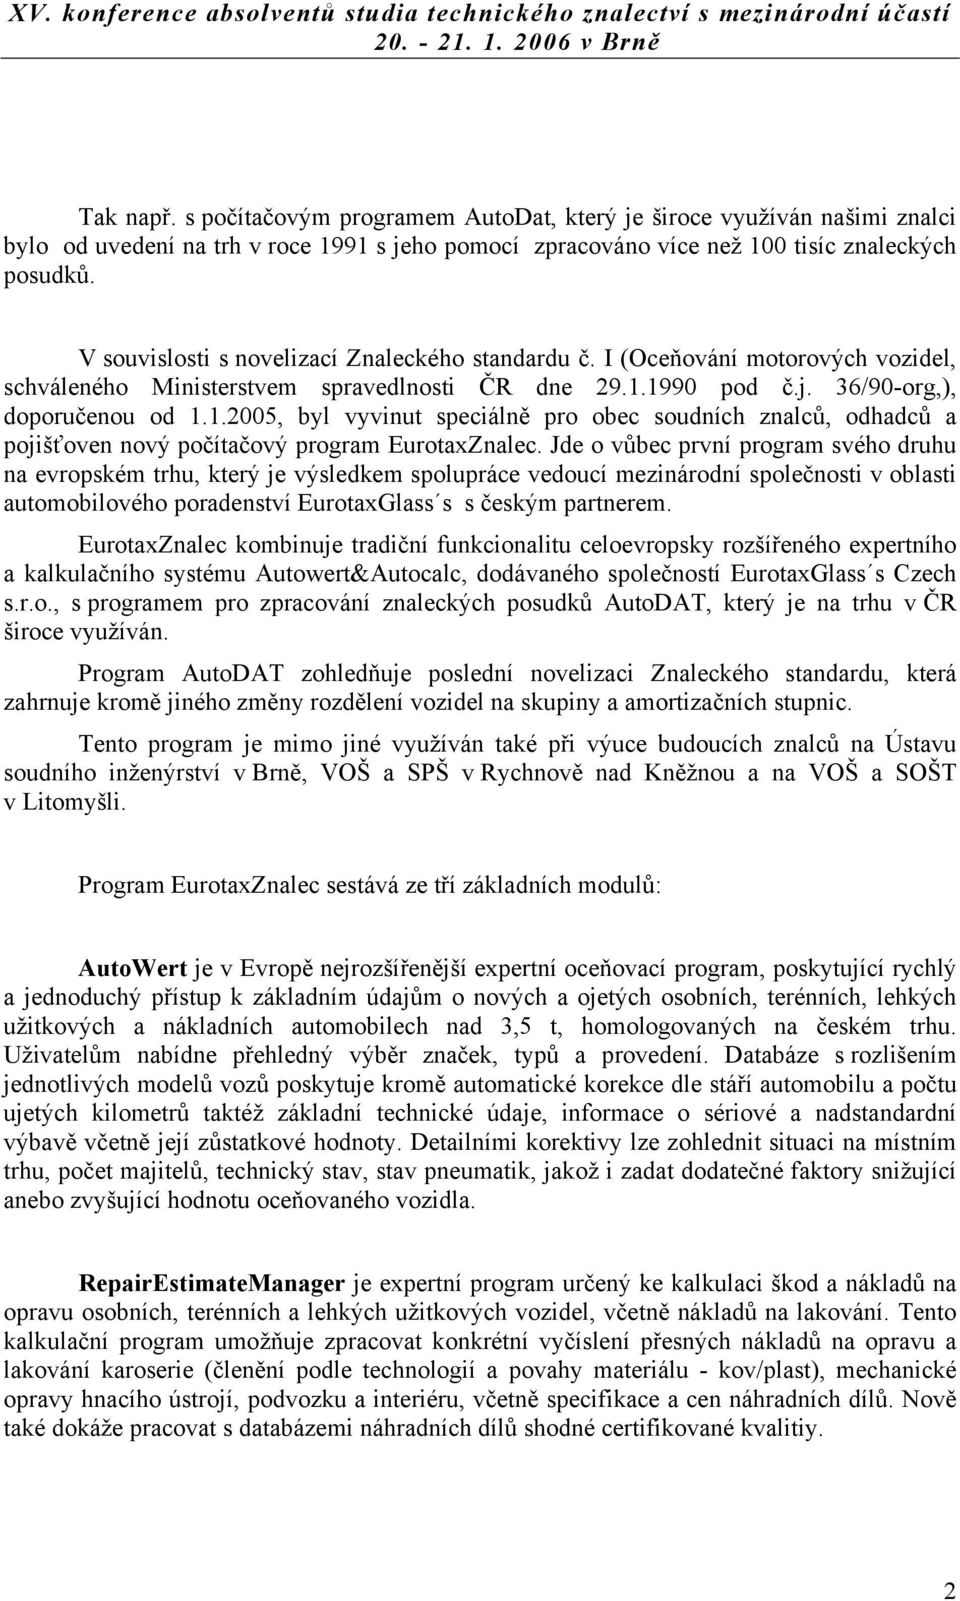 1990 pod č.j. 36/90-org,), doporučenou od 1.1.2005, byl vyvinut speciálně pro obec soudních znalců, odhadců a pojišťoven nový počítačový program EurotaxZnalec.